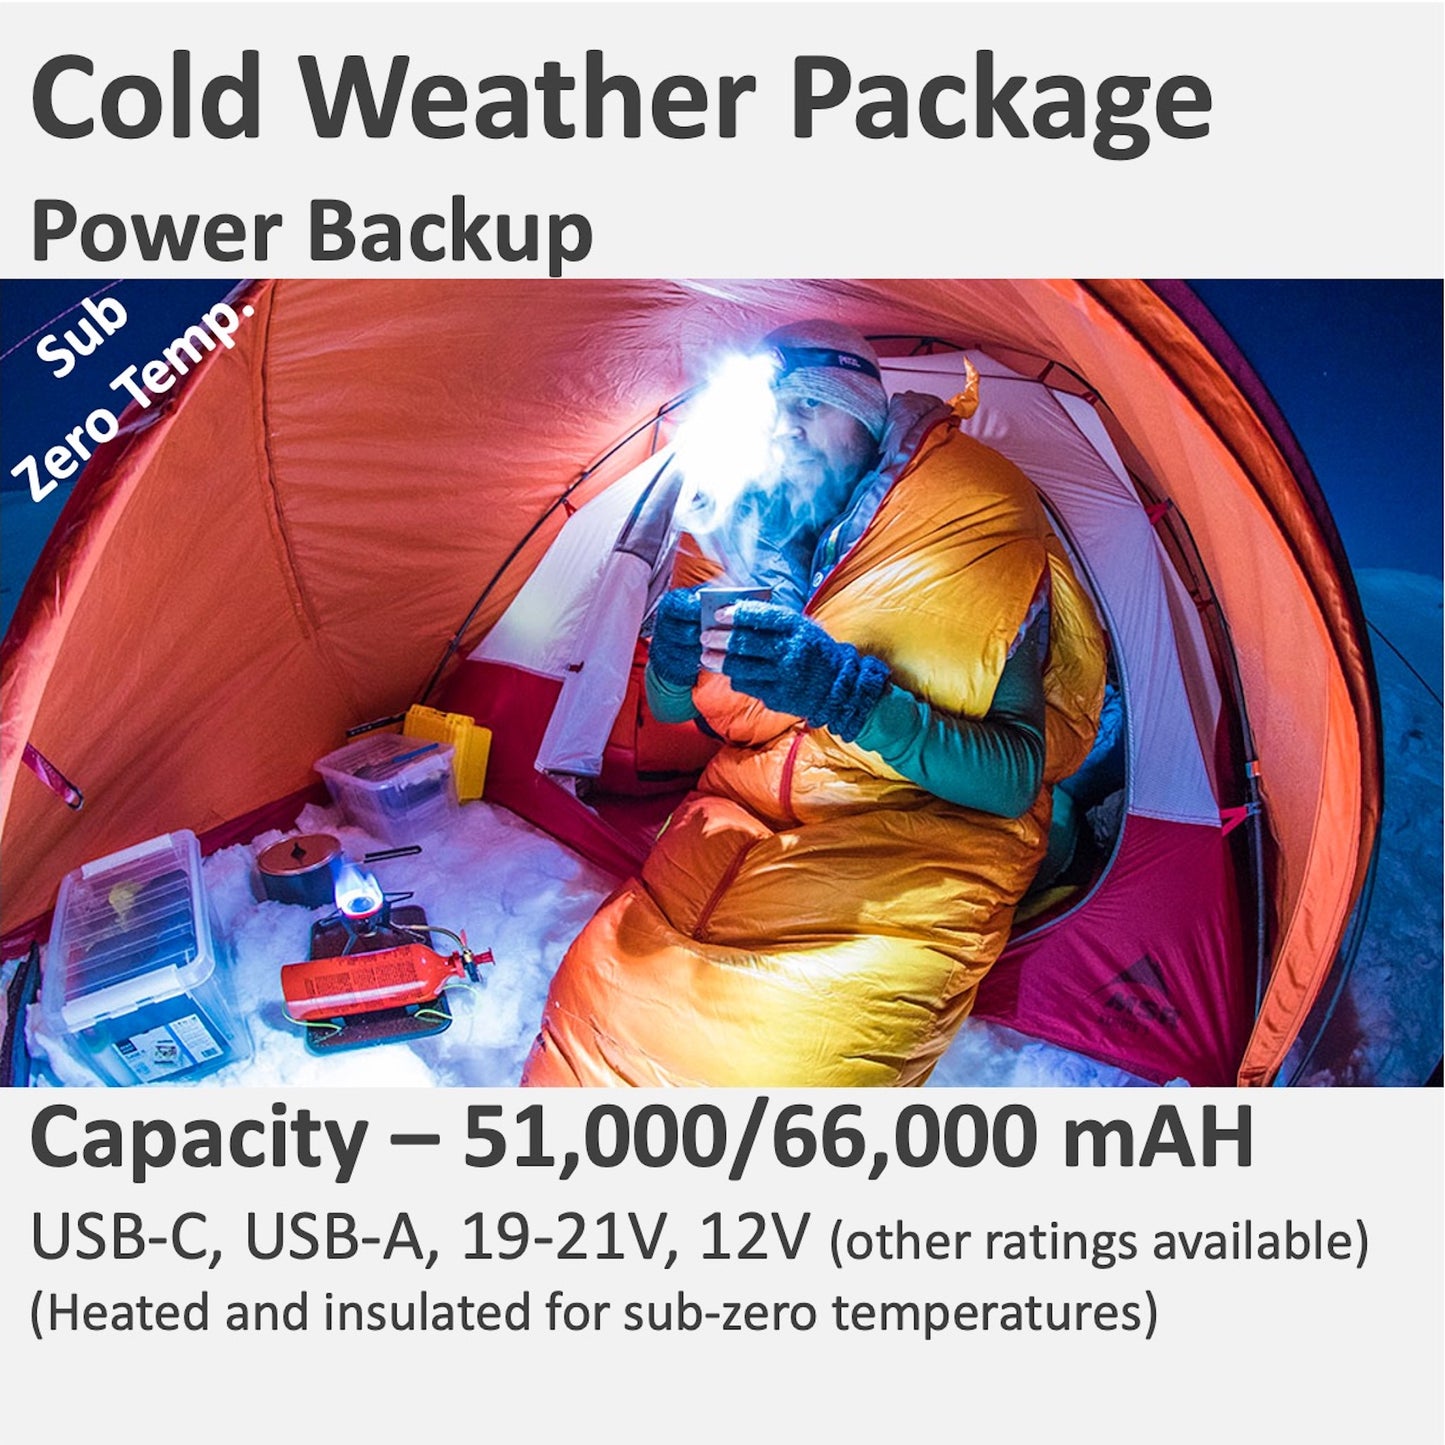 Cold Weather Power backup with USB-C, Barrel (19V-21.5V), 12V, USB-A